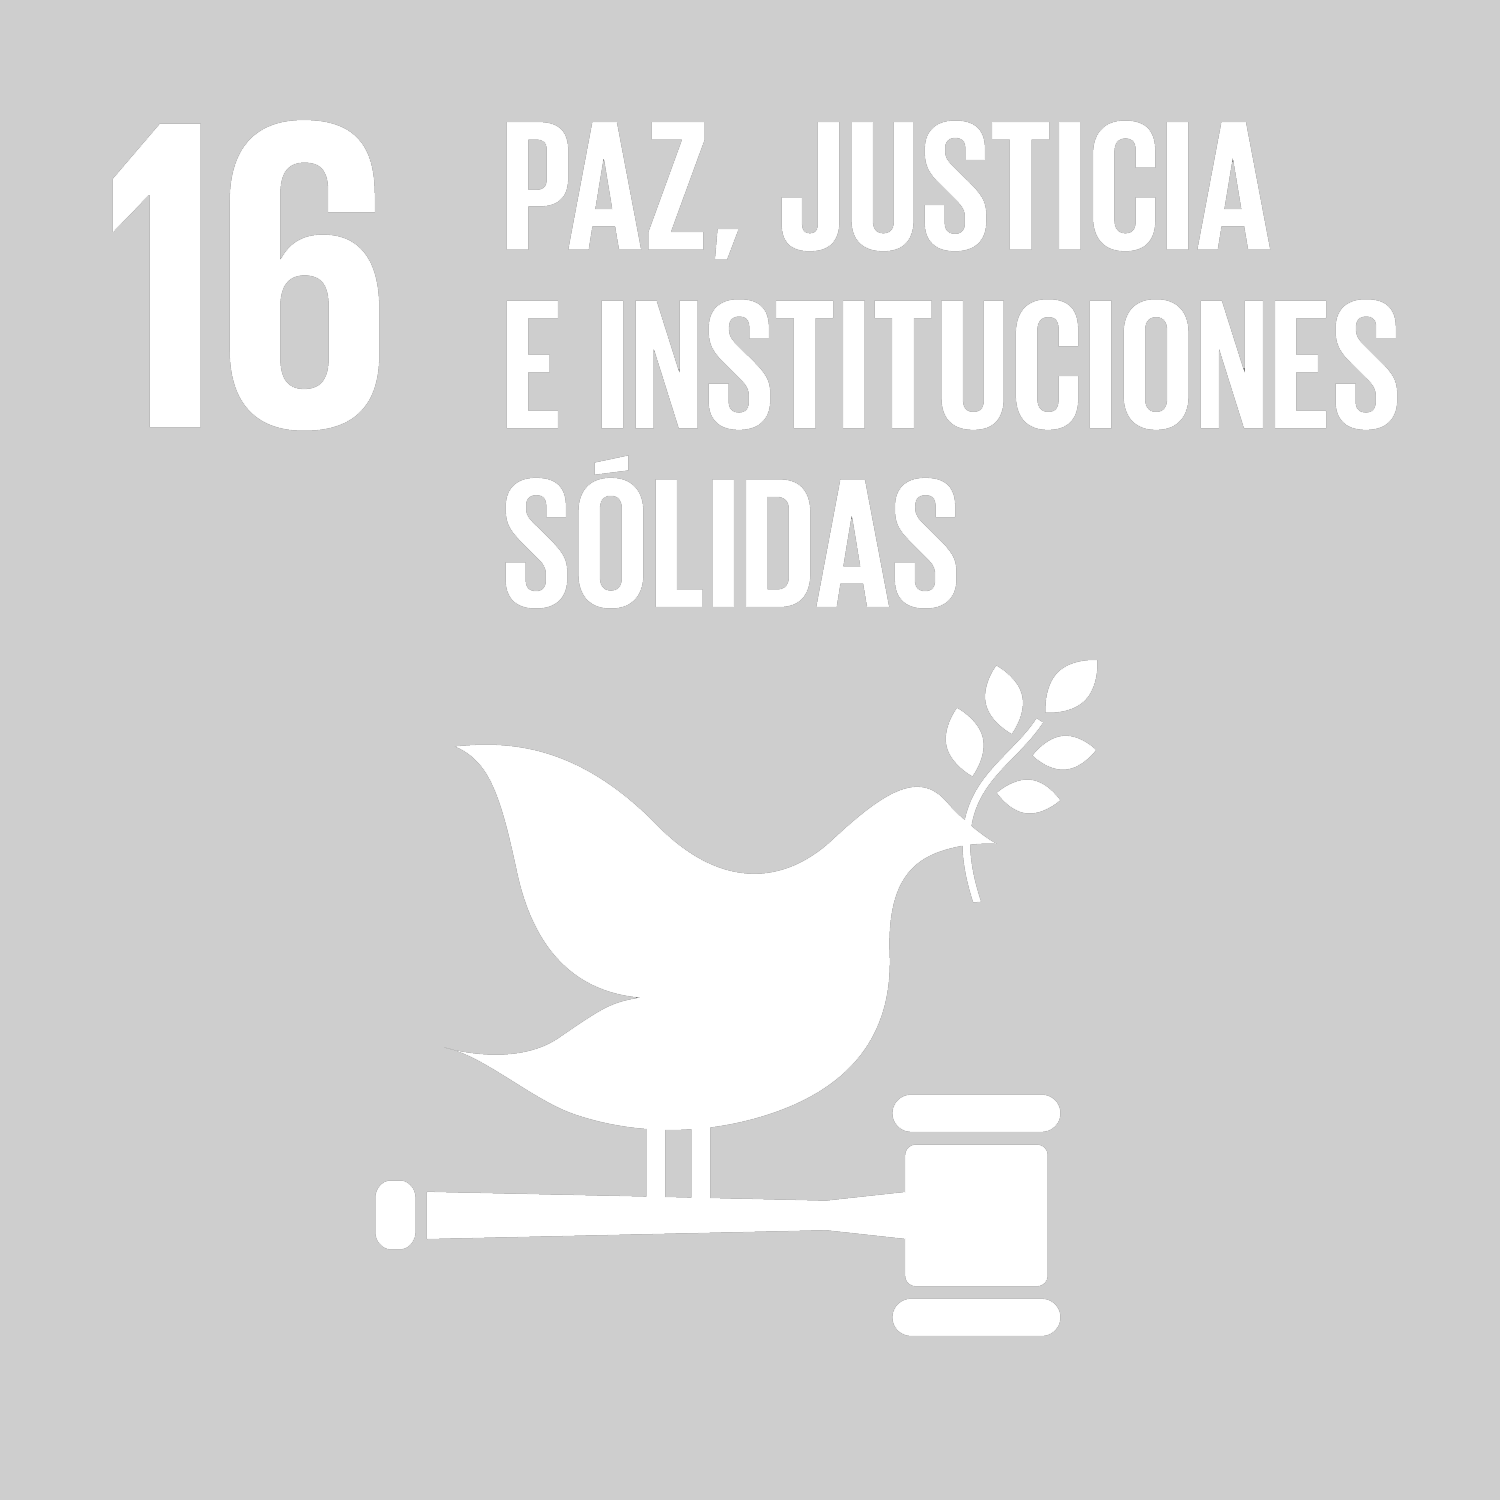 Objetivo 16: Promover sociedades justas, pacíficas e inclusivas